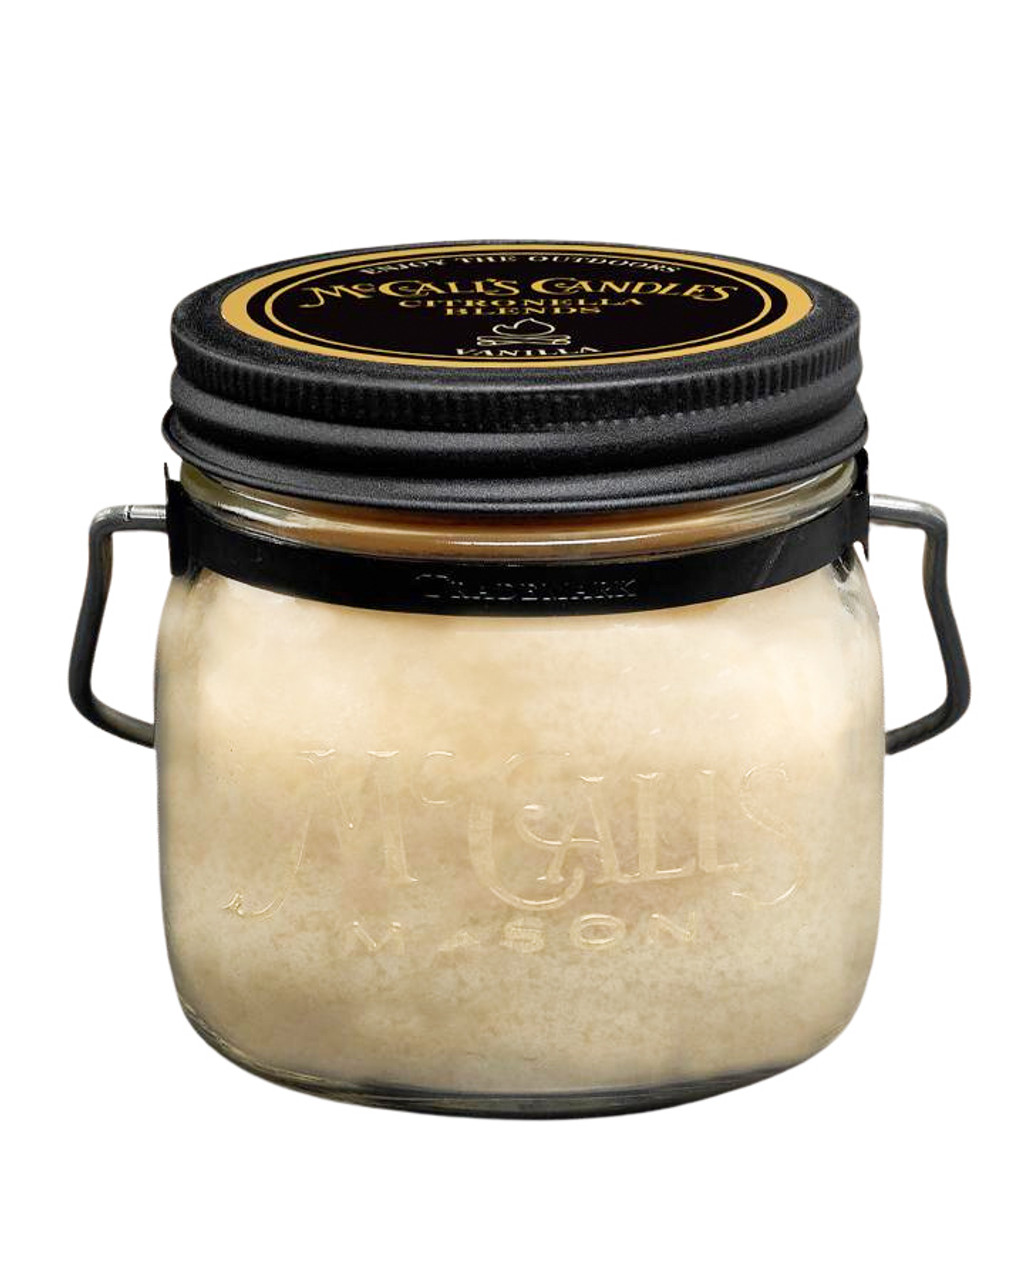 McCall's Candle Company Vanilla Citronella 16 Oz. Mason Jar